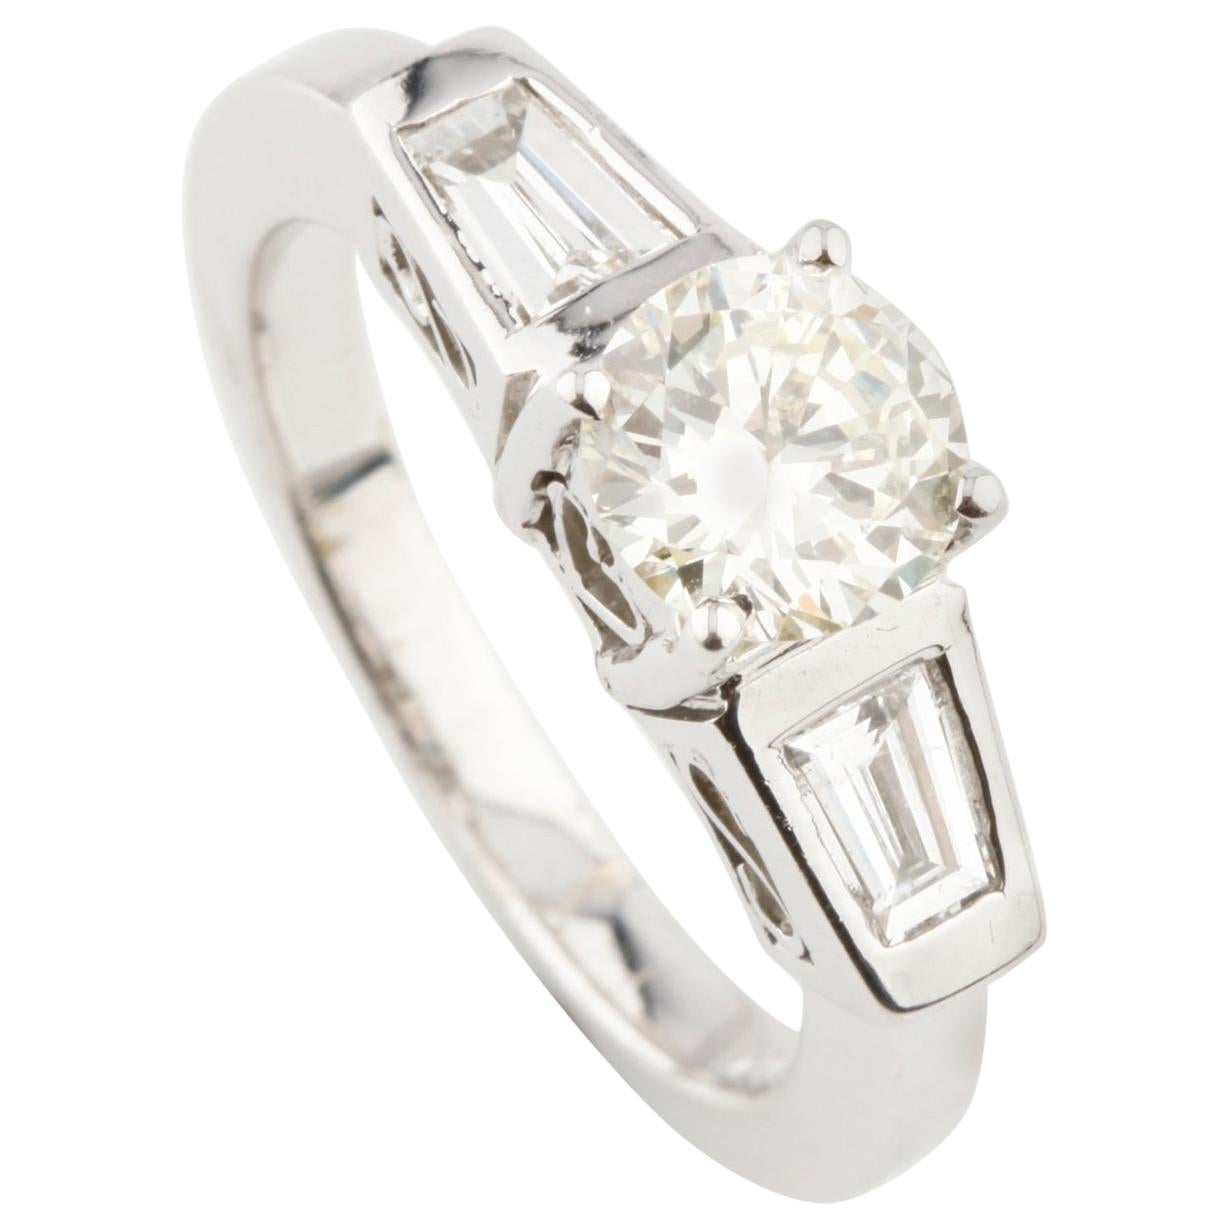 1.41 Carat Light Fancy Yellow Diamond 14 Karat White Gold Engagement Ring